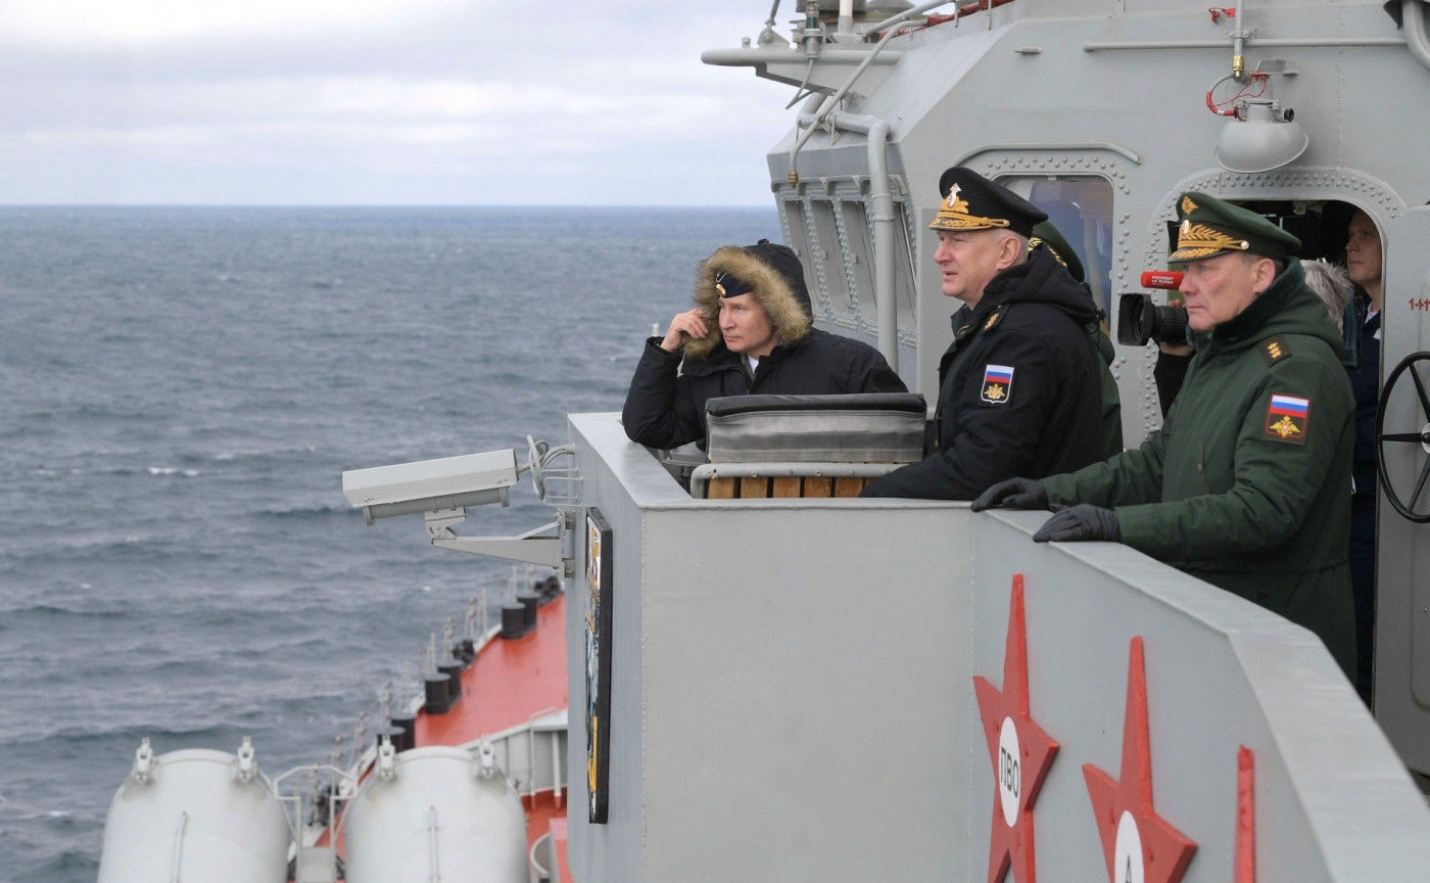 Путин с борта ракетного крейсера понаблюдал за учениями в Чёрном море